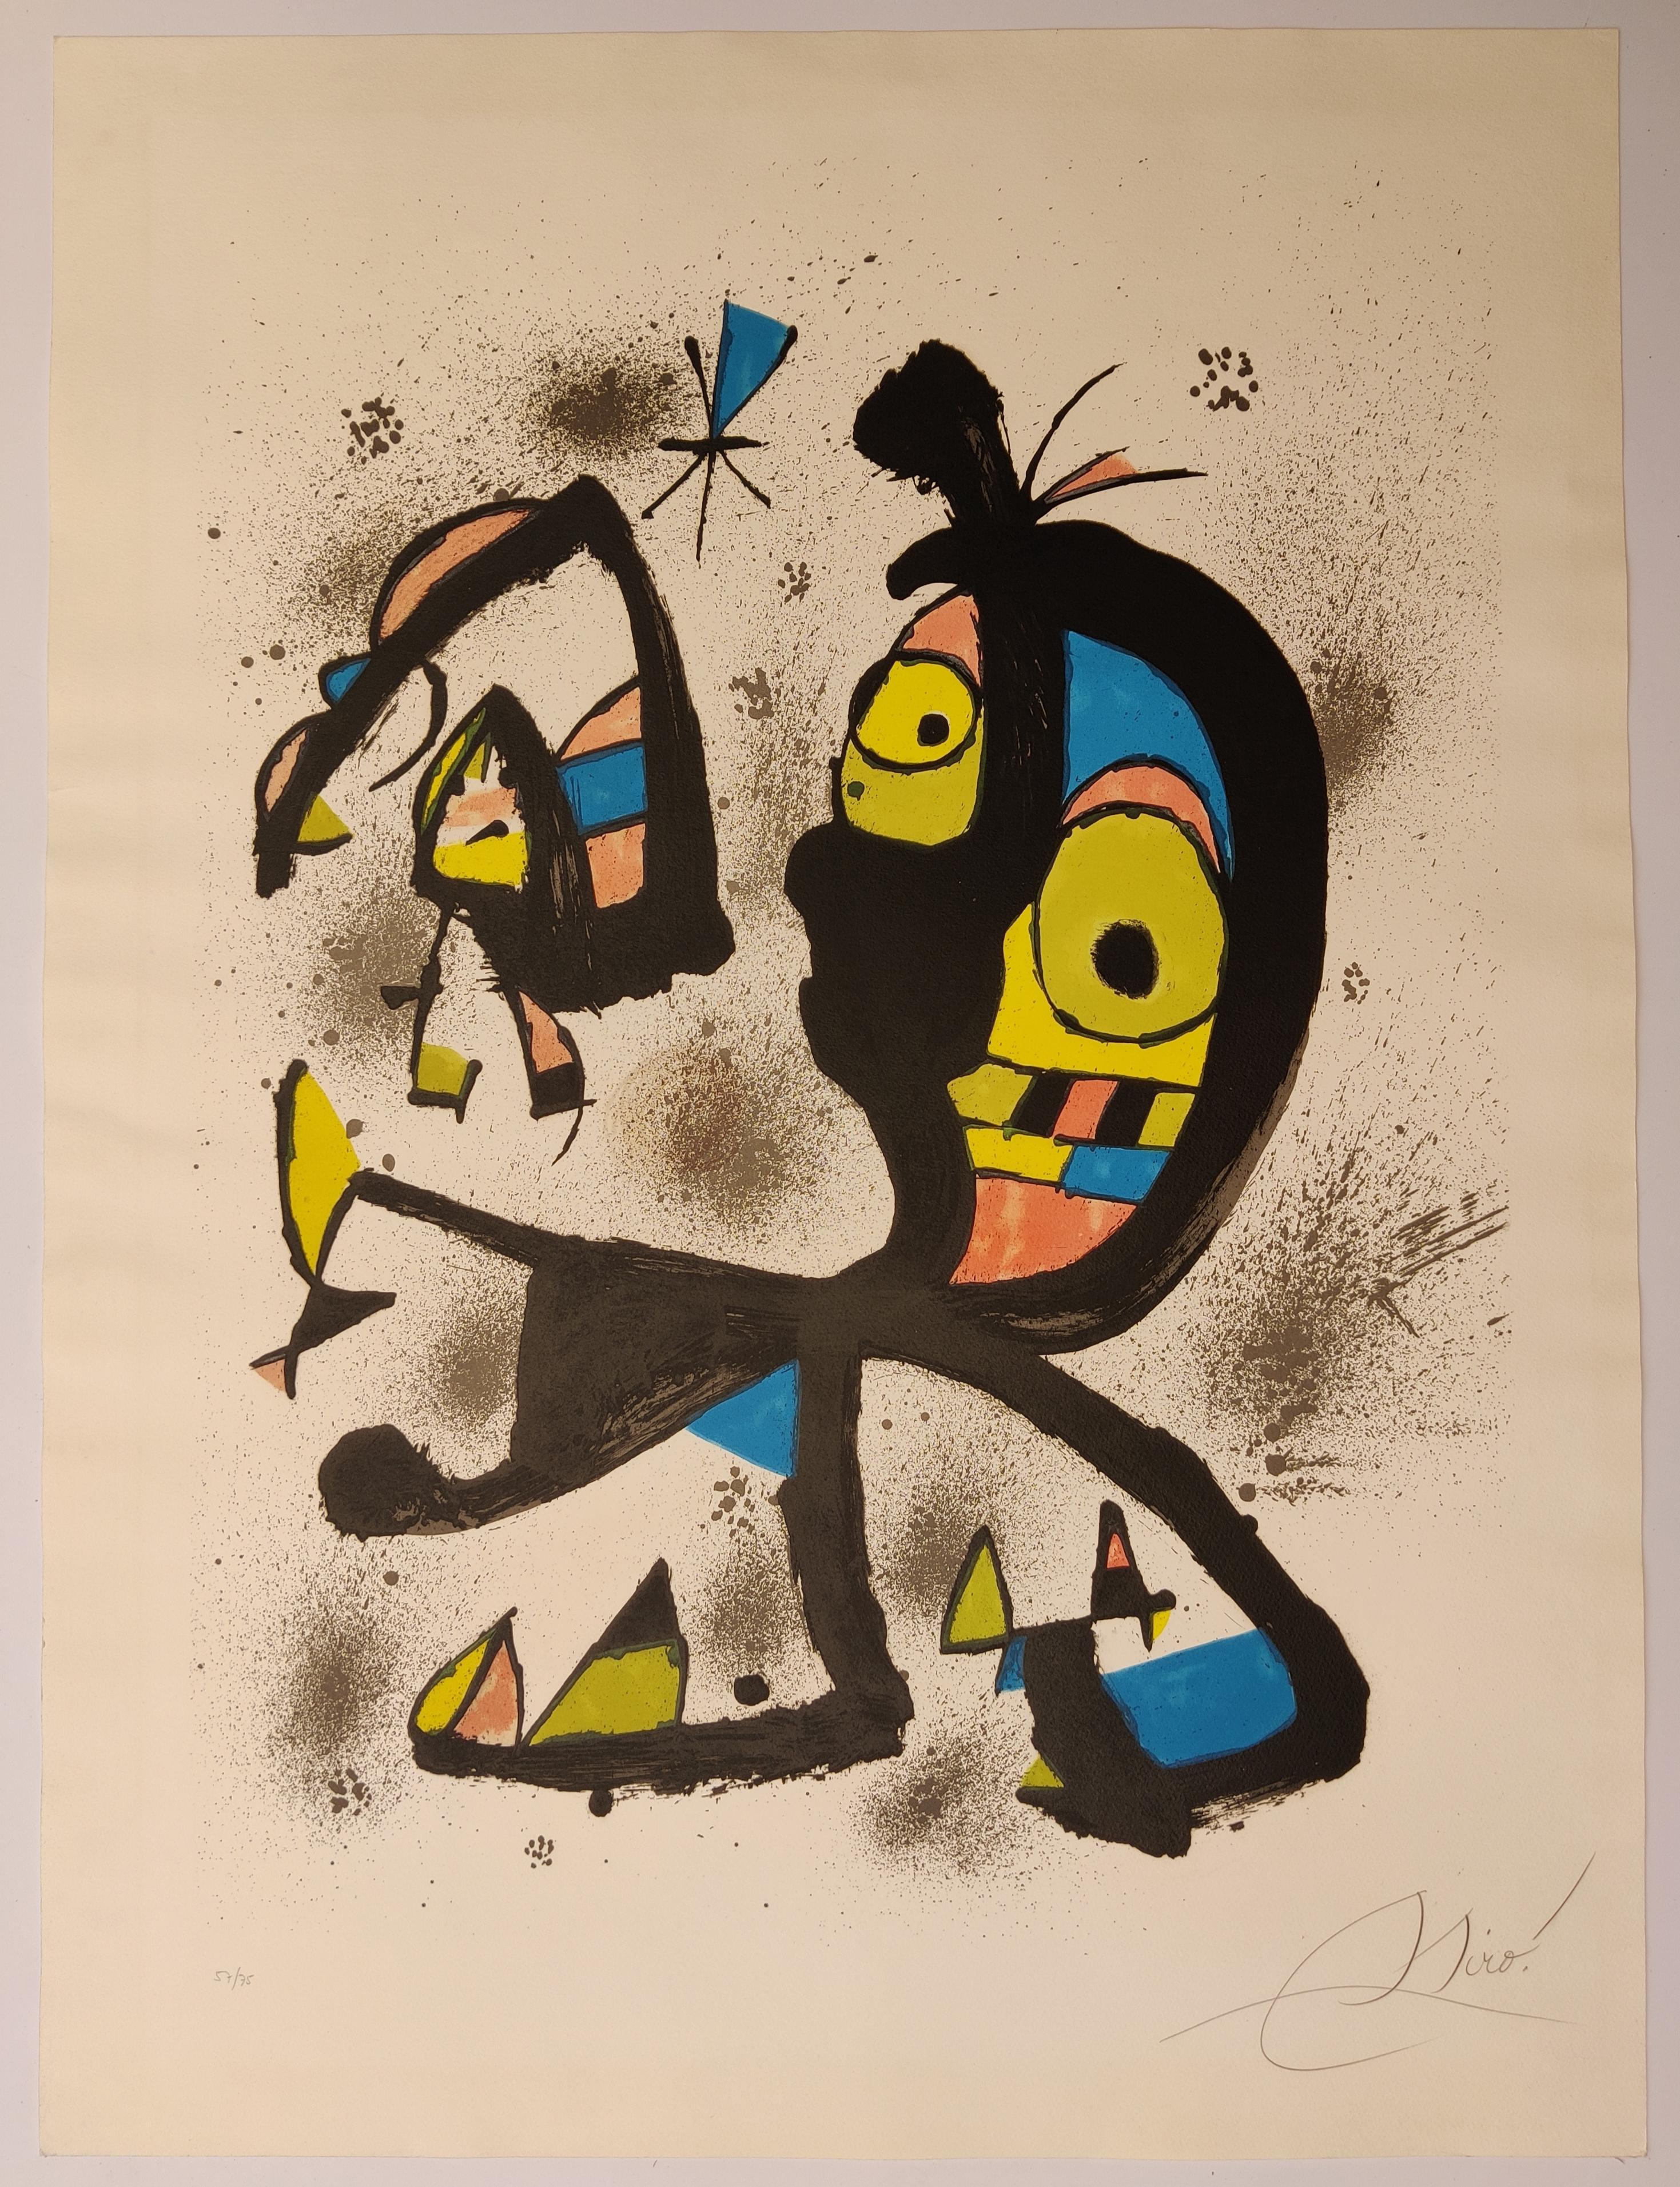 Joan Miró
Obra Gràfica (Œuvre graphique),  1980
Lithographie en couleurs, sur papier Arches, avec toutes les marges.
Taille de l'image 78 x 58 cm
Taille de la feuille 94 x 70 cm
Signée et numérotée 57/75 au crayon (il y avait aussi 20 hors commerce